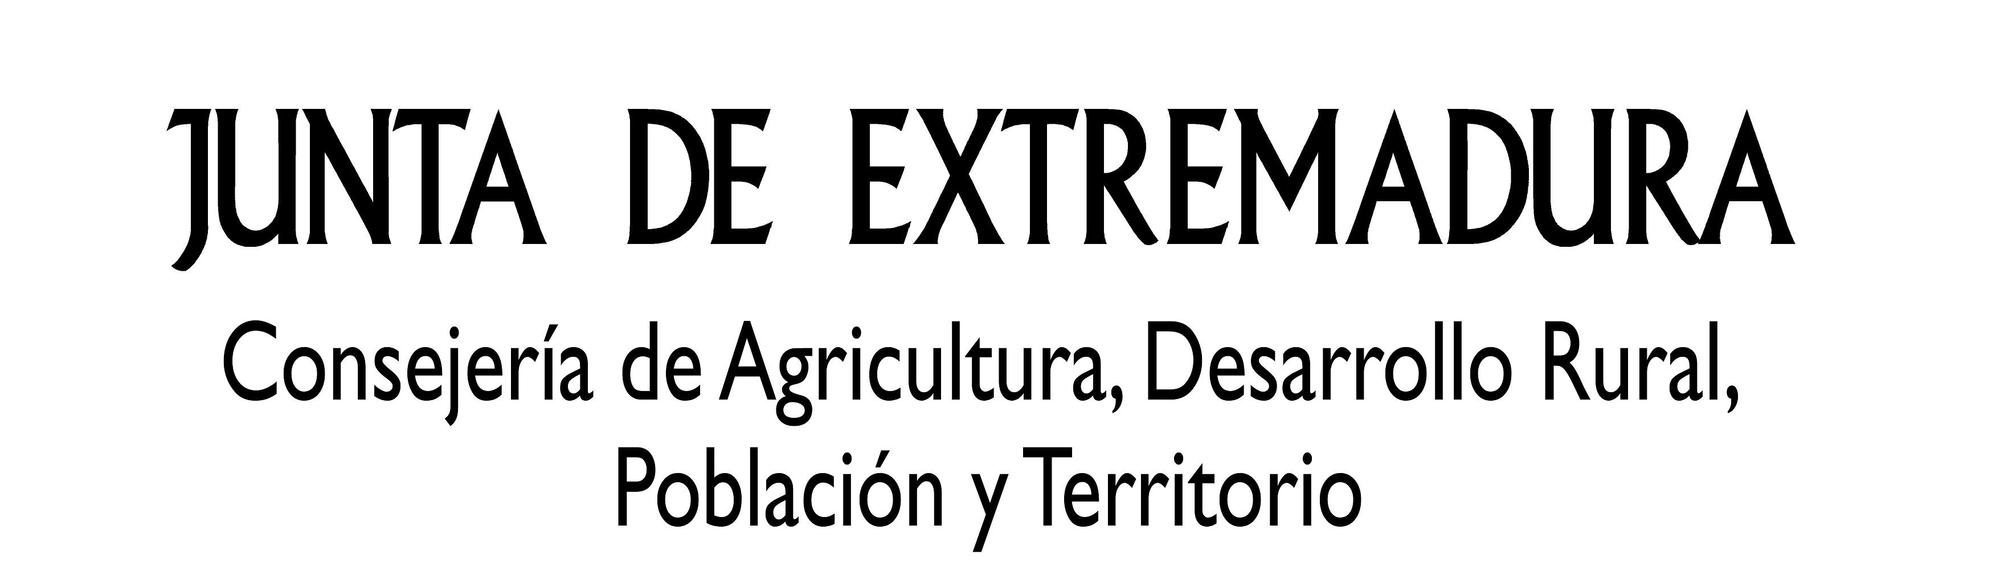 JUNTA DE EXTREMADURA / CONSEJERÍA DE AGRICULTURA, DESARROLLO RURAL, POBLACIÓN Y TERRITORIO.